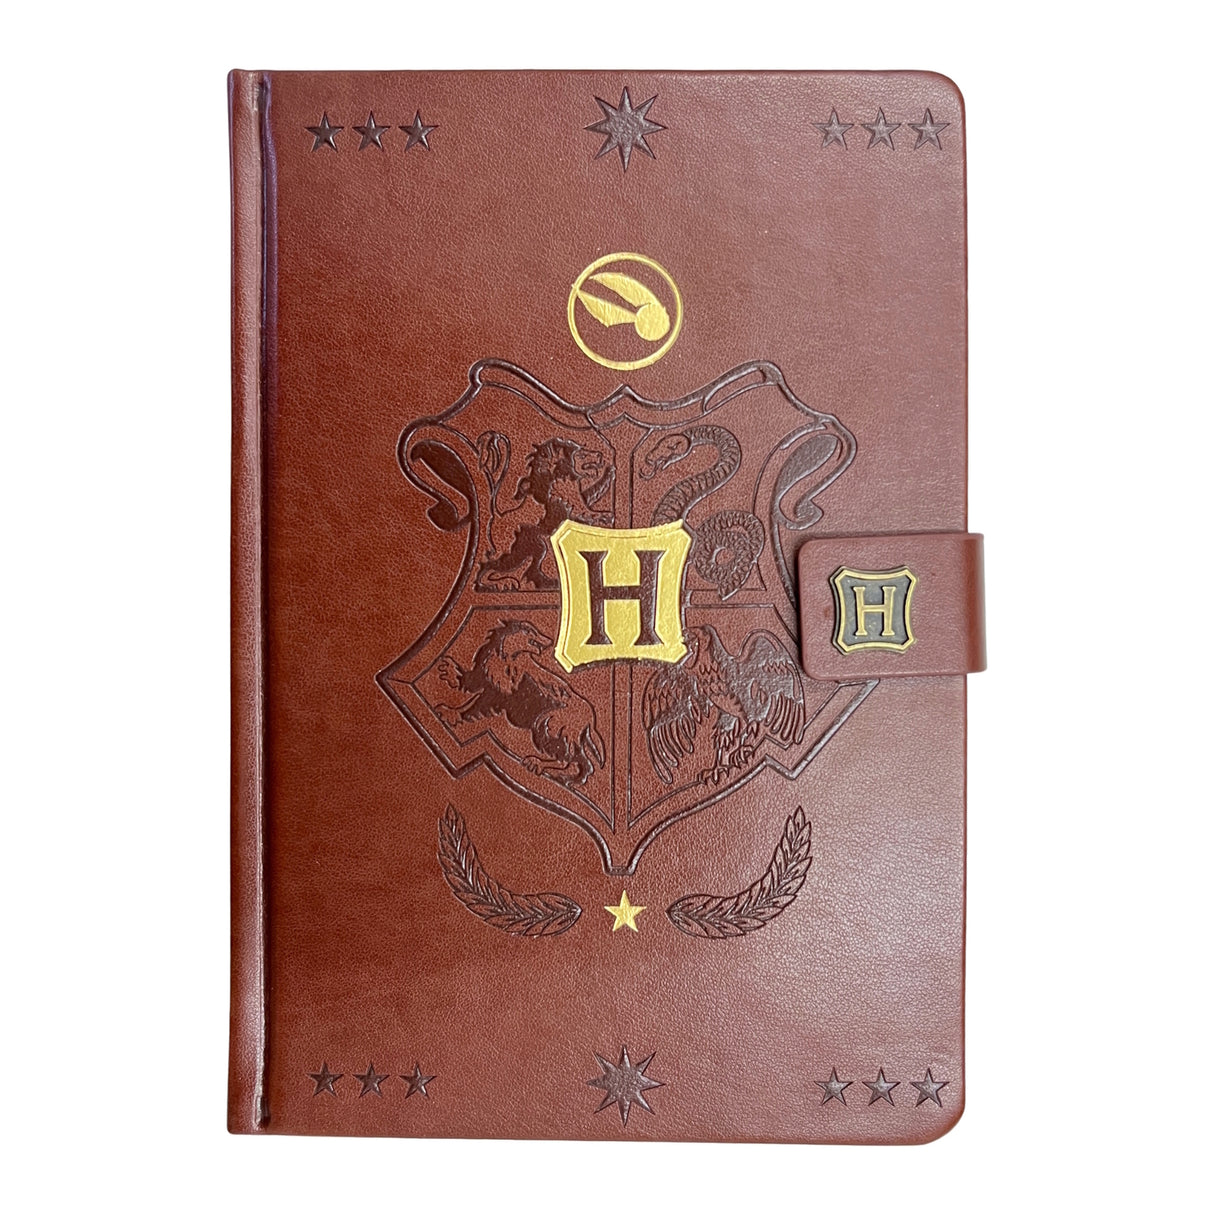 Harry Potter Quidditch Notizbuch mit 240 linierten Seiten